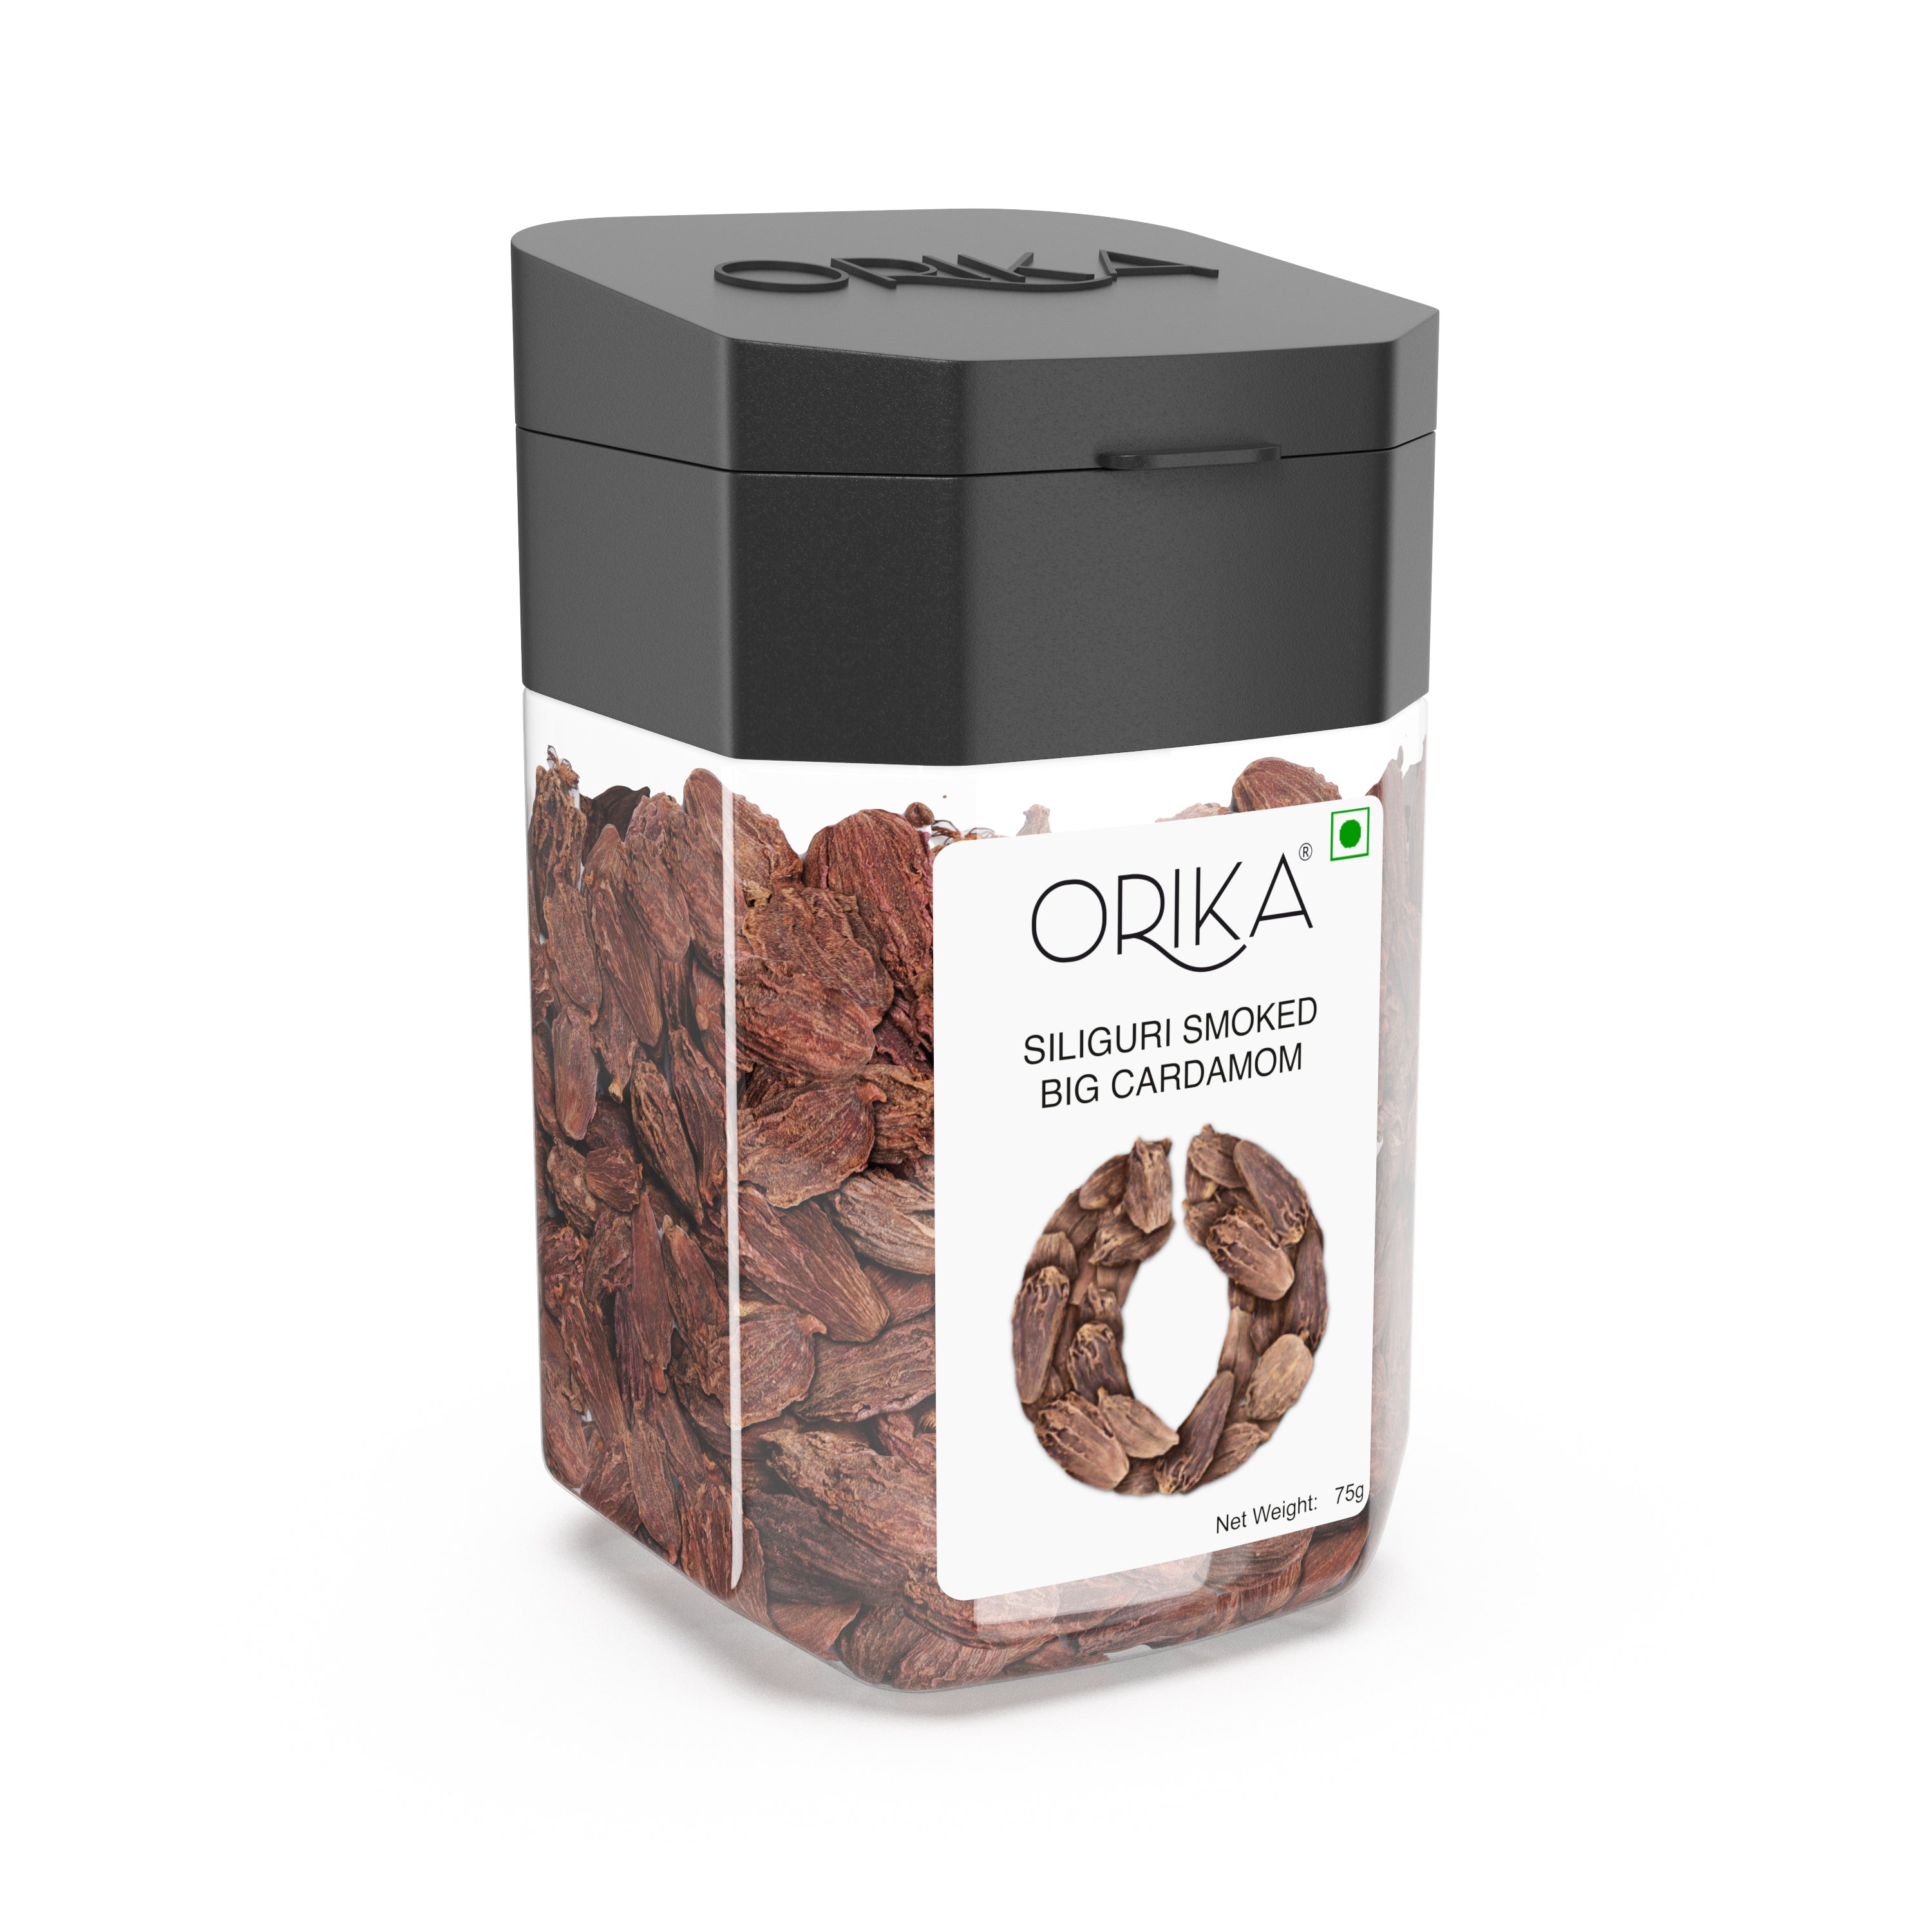 Orika's Siliguri Smoked Big Cardamom,75g - Orika Spices India